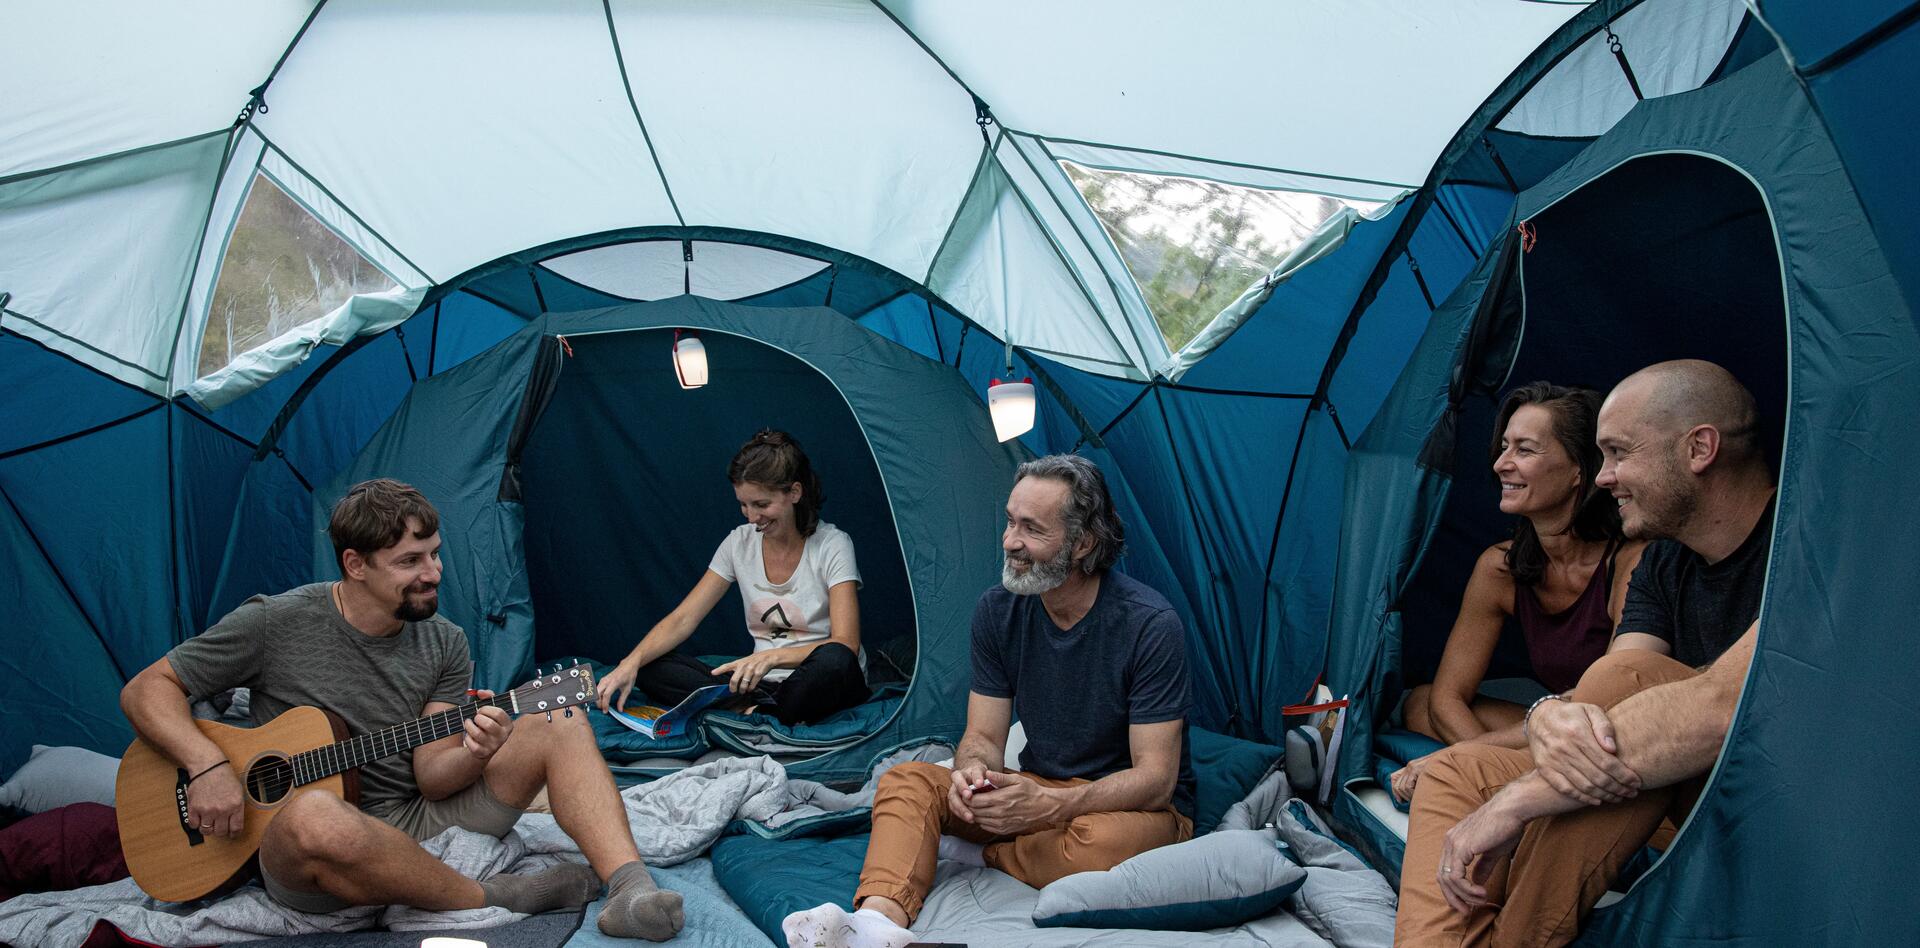 Campinglampen im Zelt aufgehangen